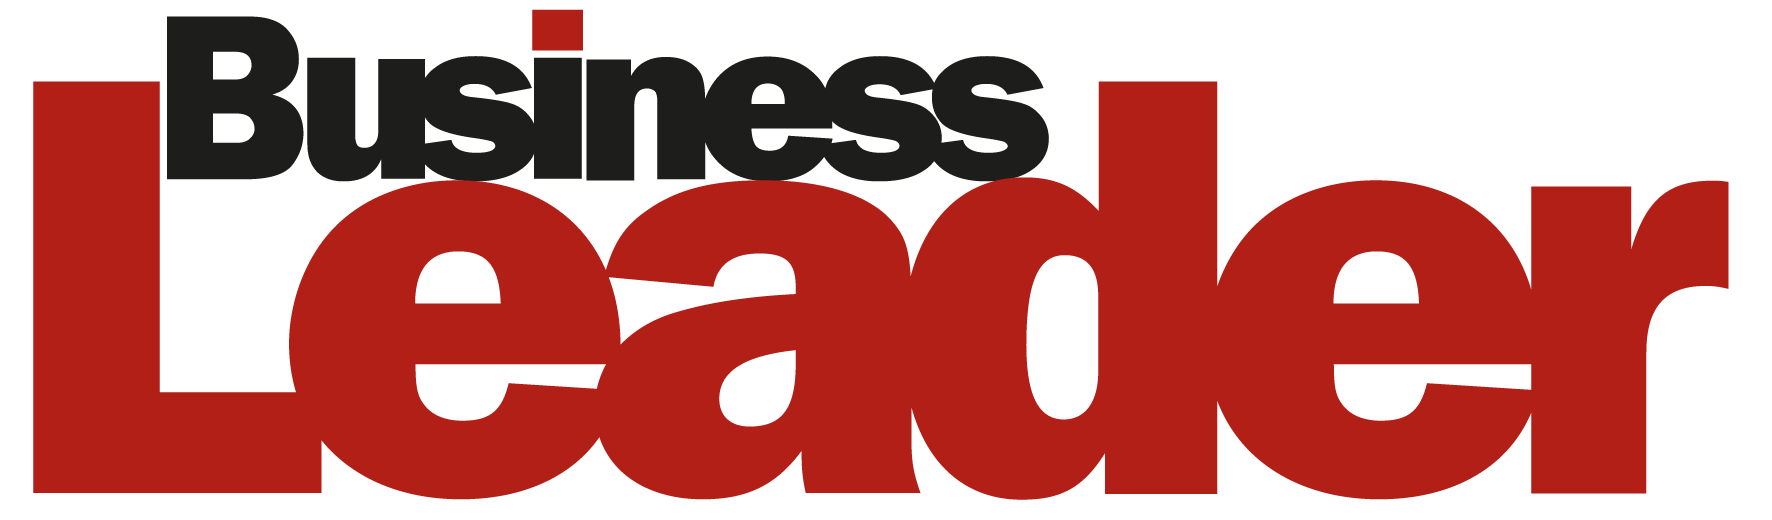 Logo for Business Leader